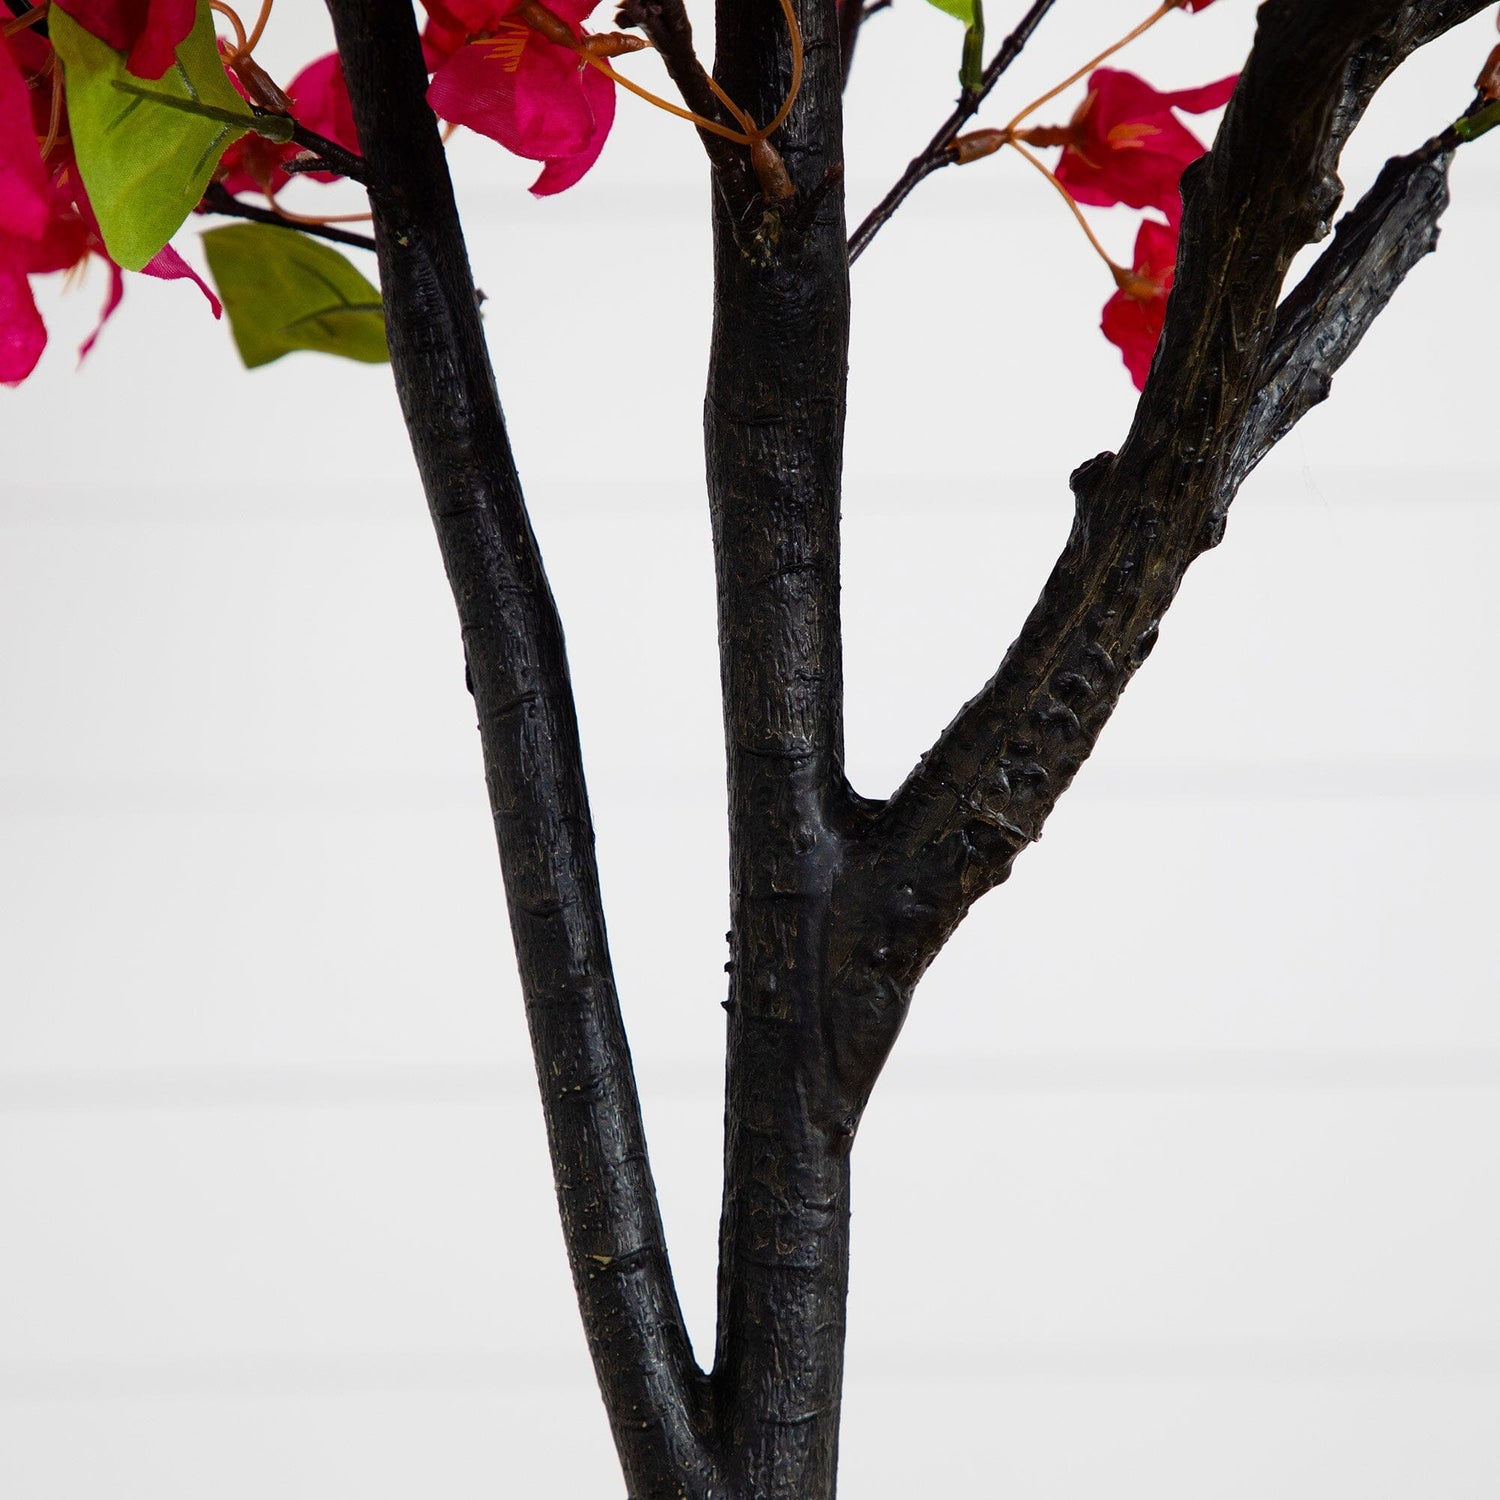 6’ Artificial Bougainvillea Tree with White Decorative Planter